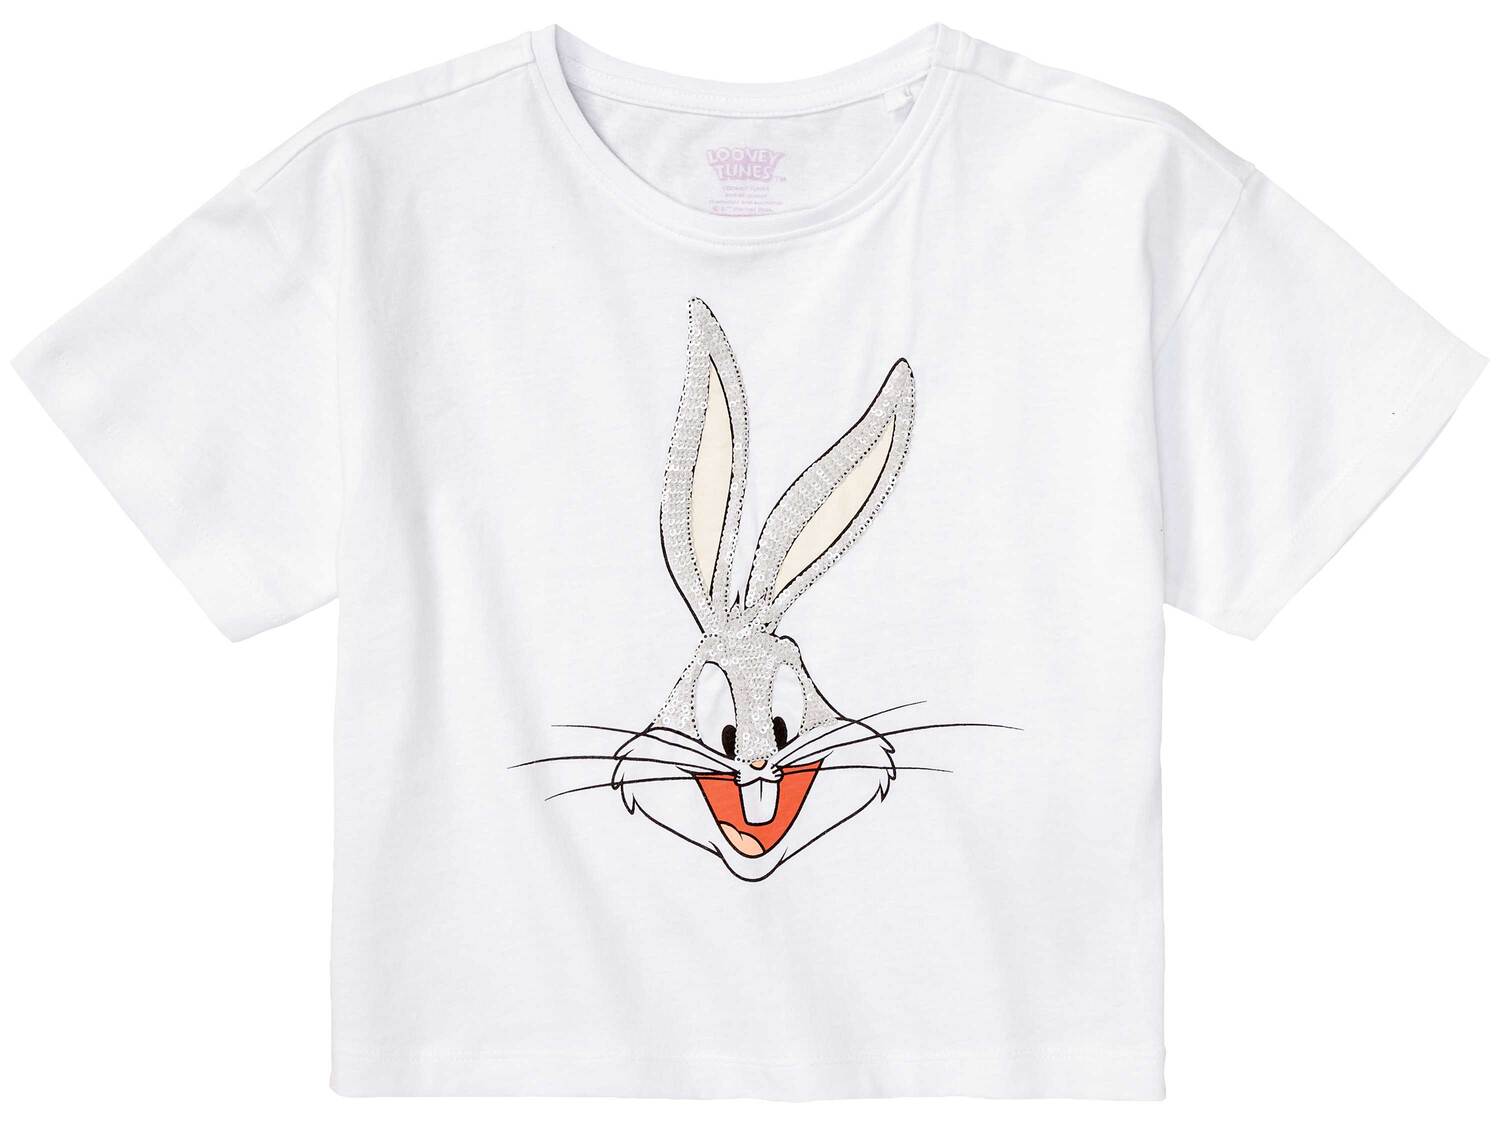 T-shirt enfant , le prix 4.99 € 
- Au choix :
- Fille : du 2-4 ans (98-104 cm) ...